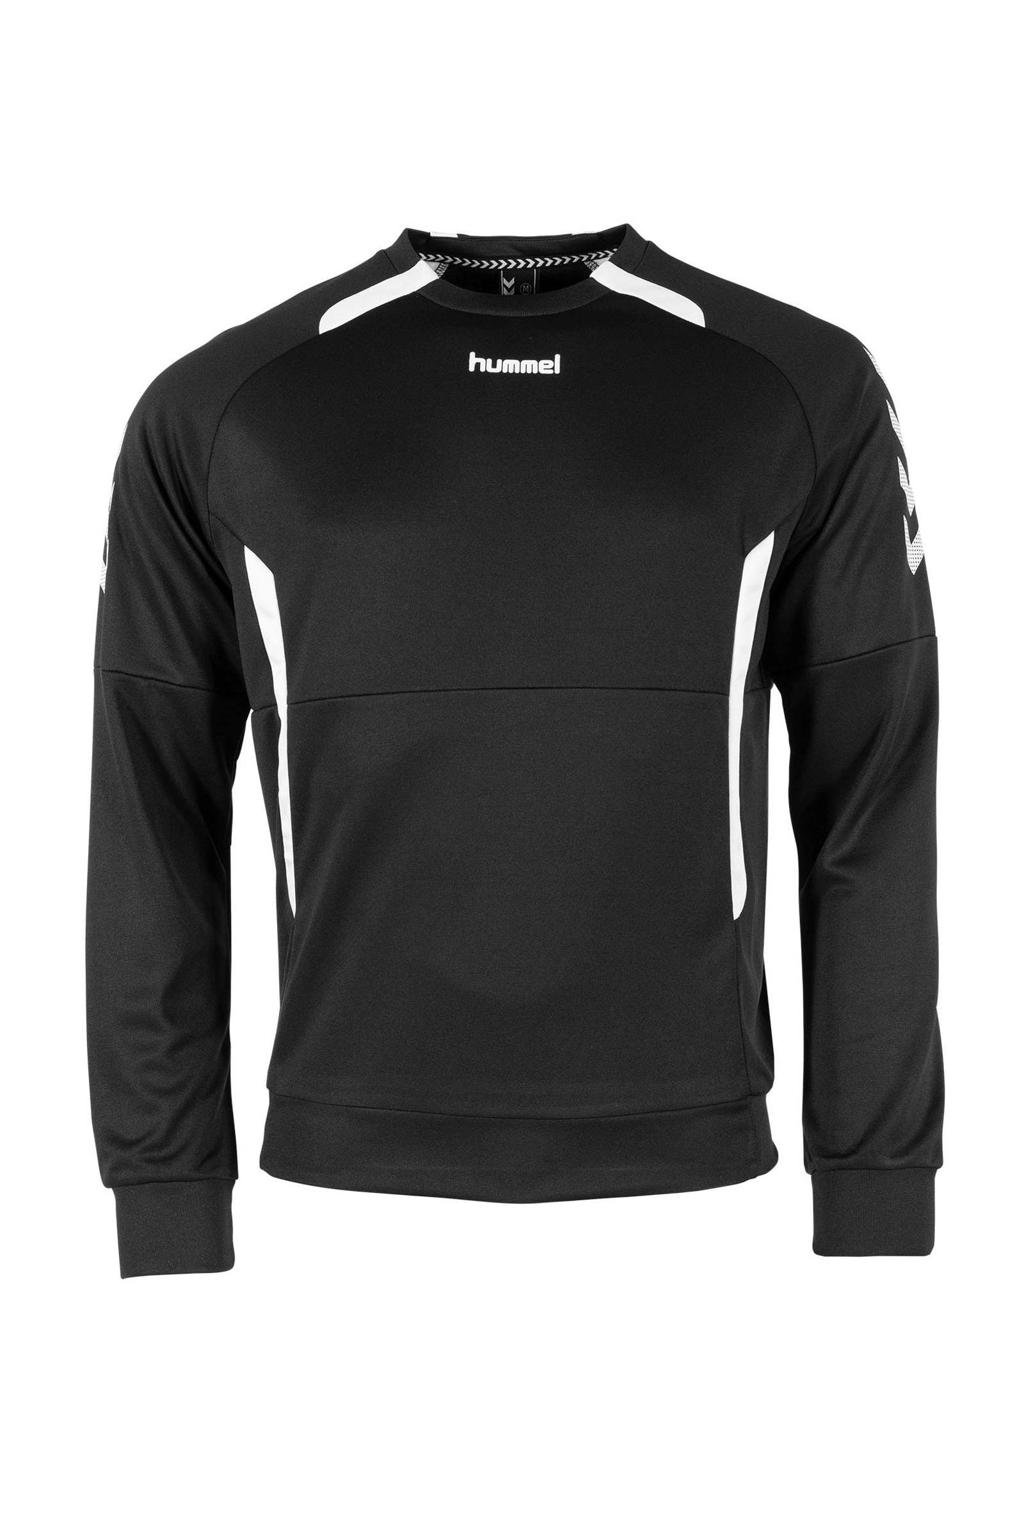 hummel Junior  sportsweater Authentic Top RN zwart/wit